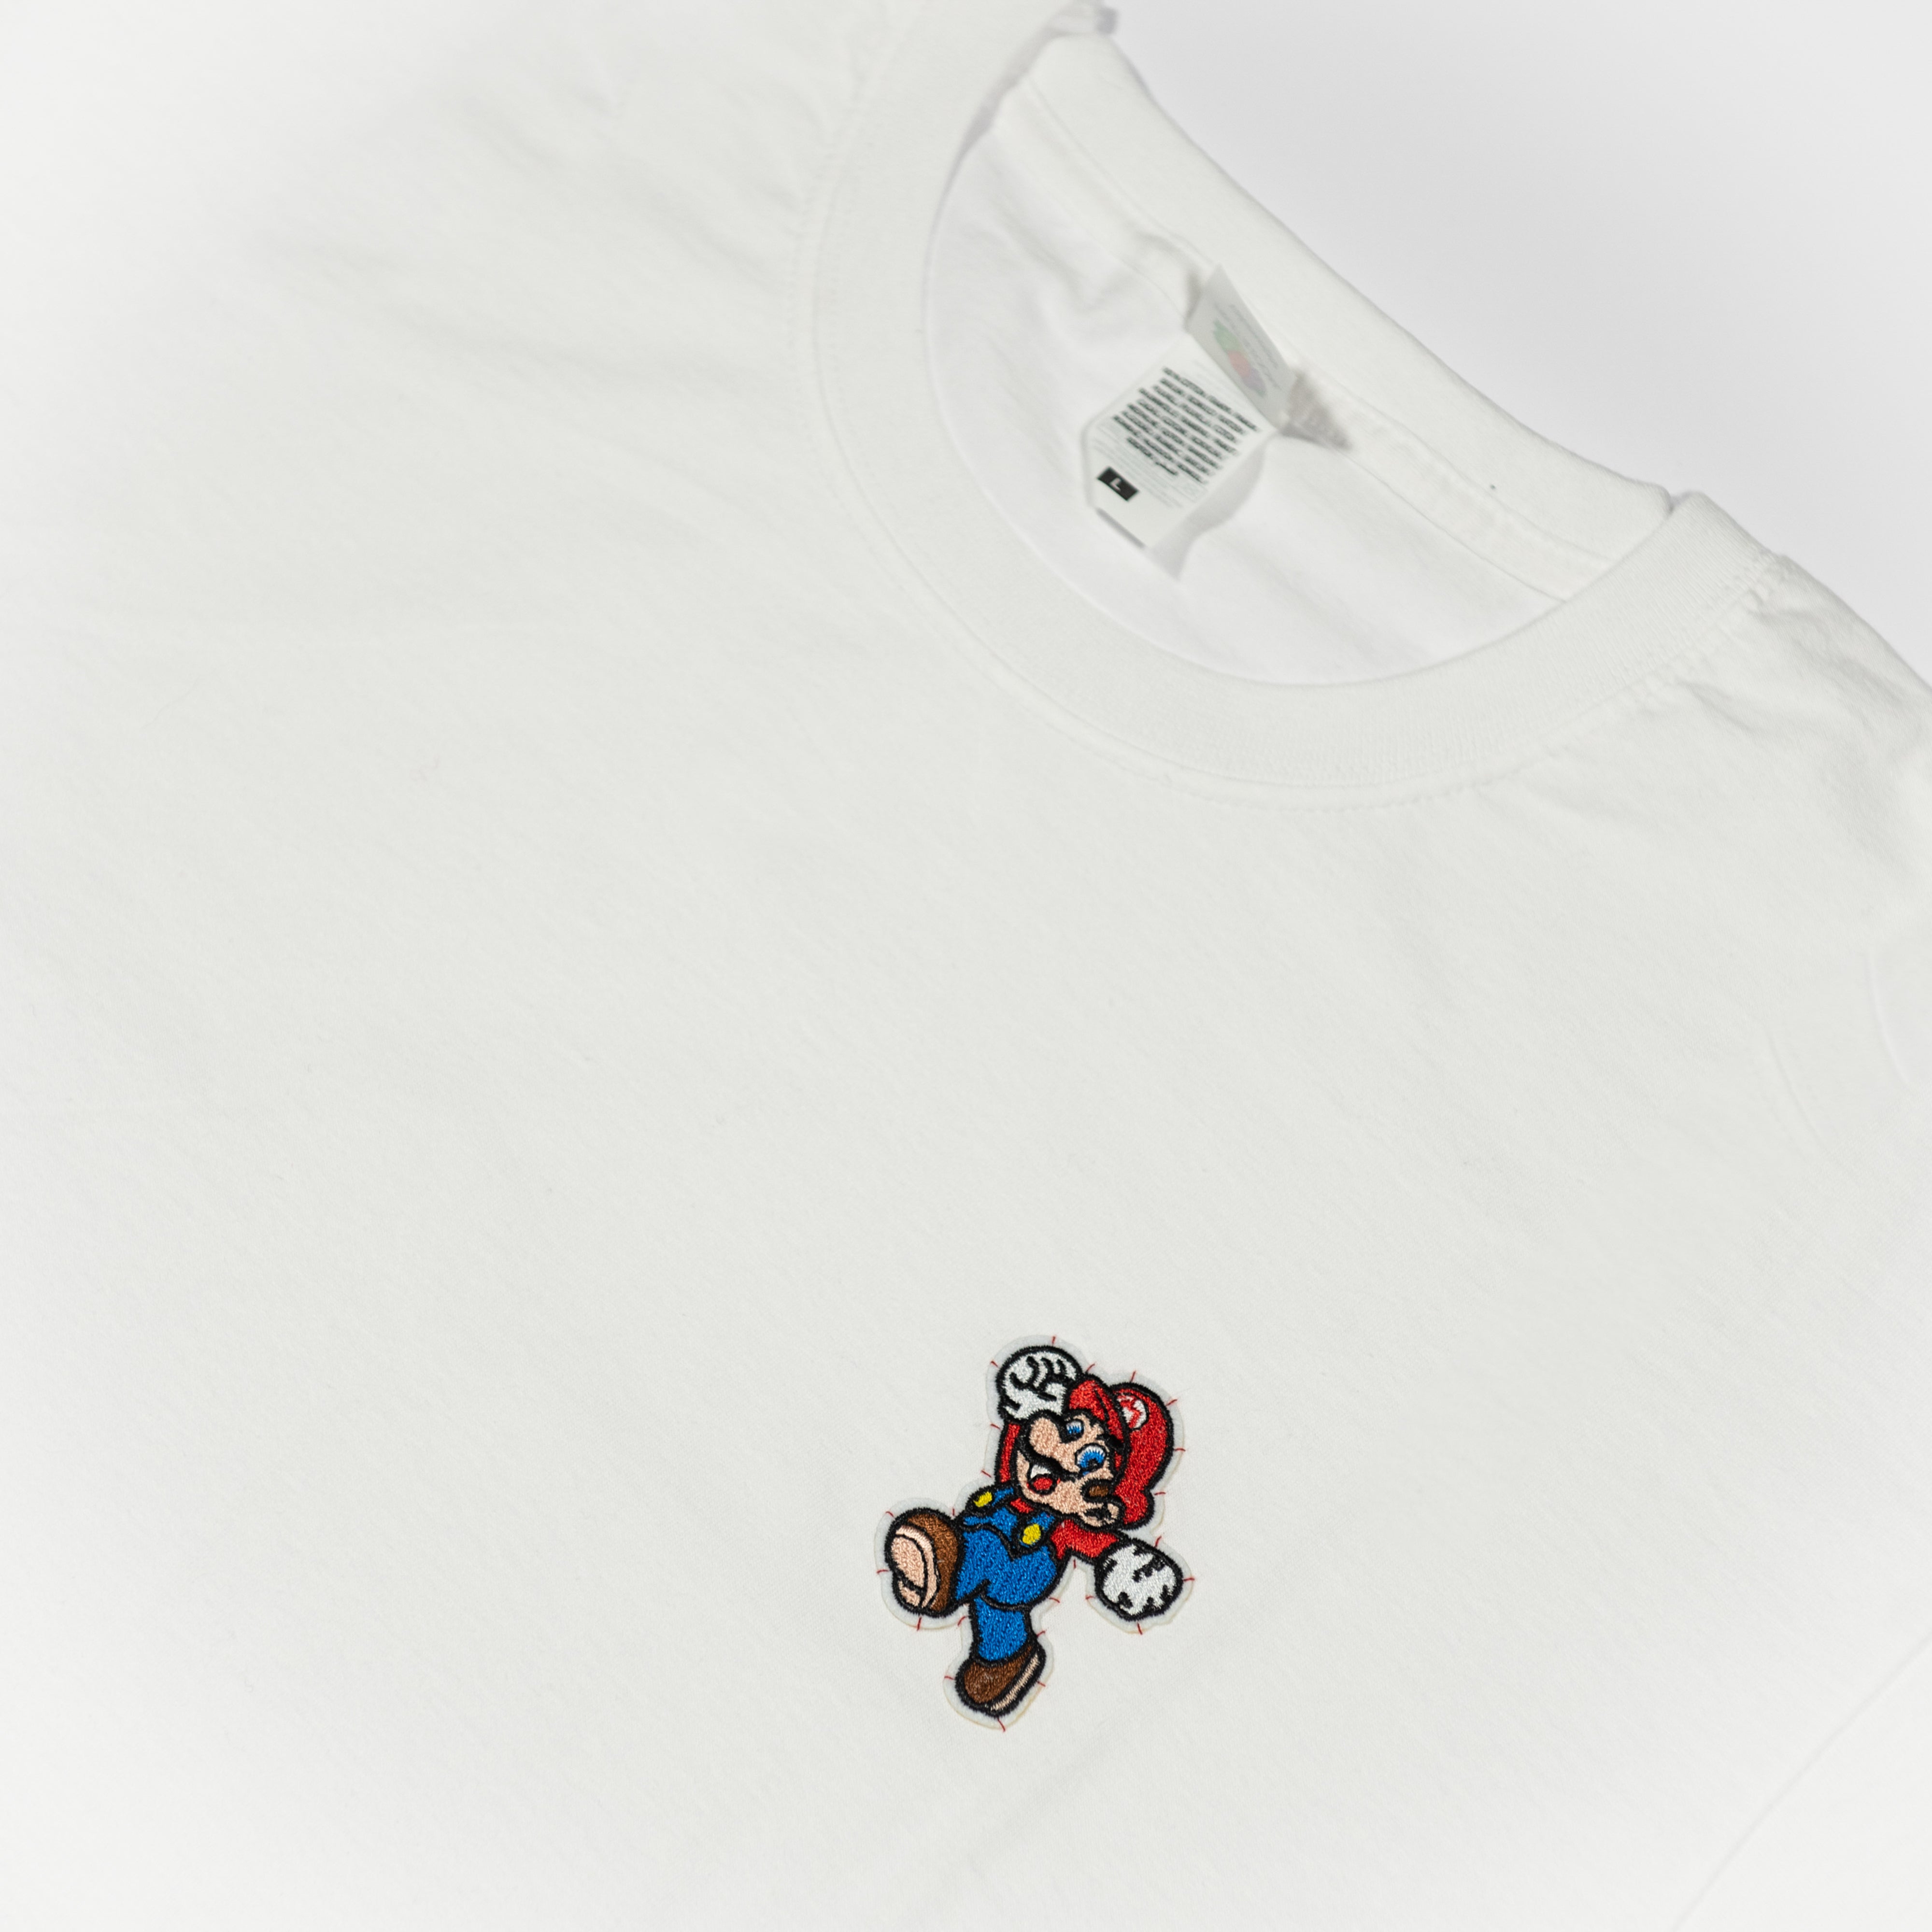 T-shirt Super Mario